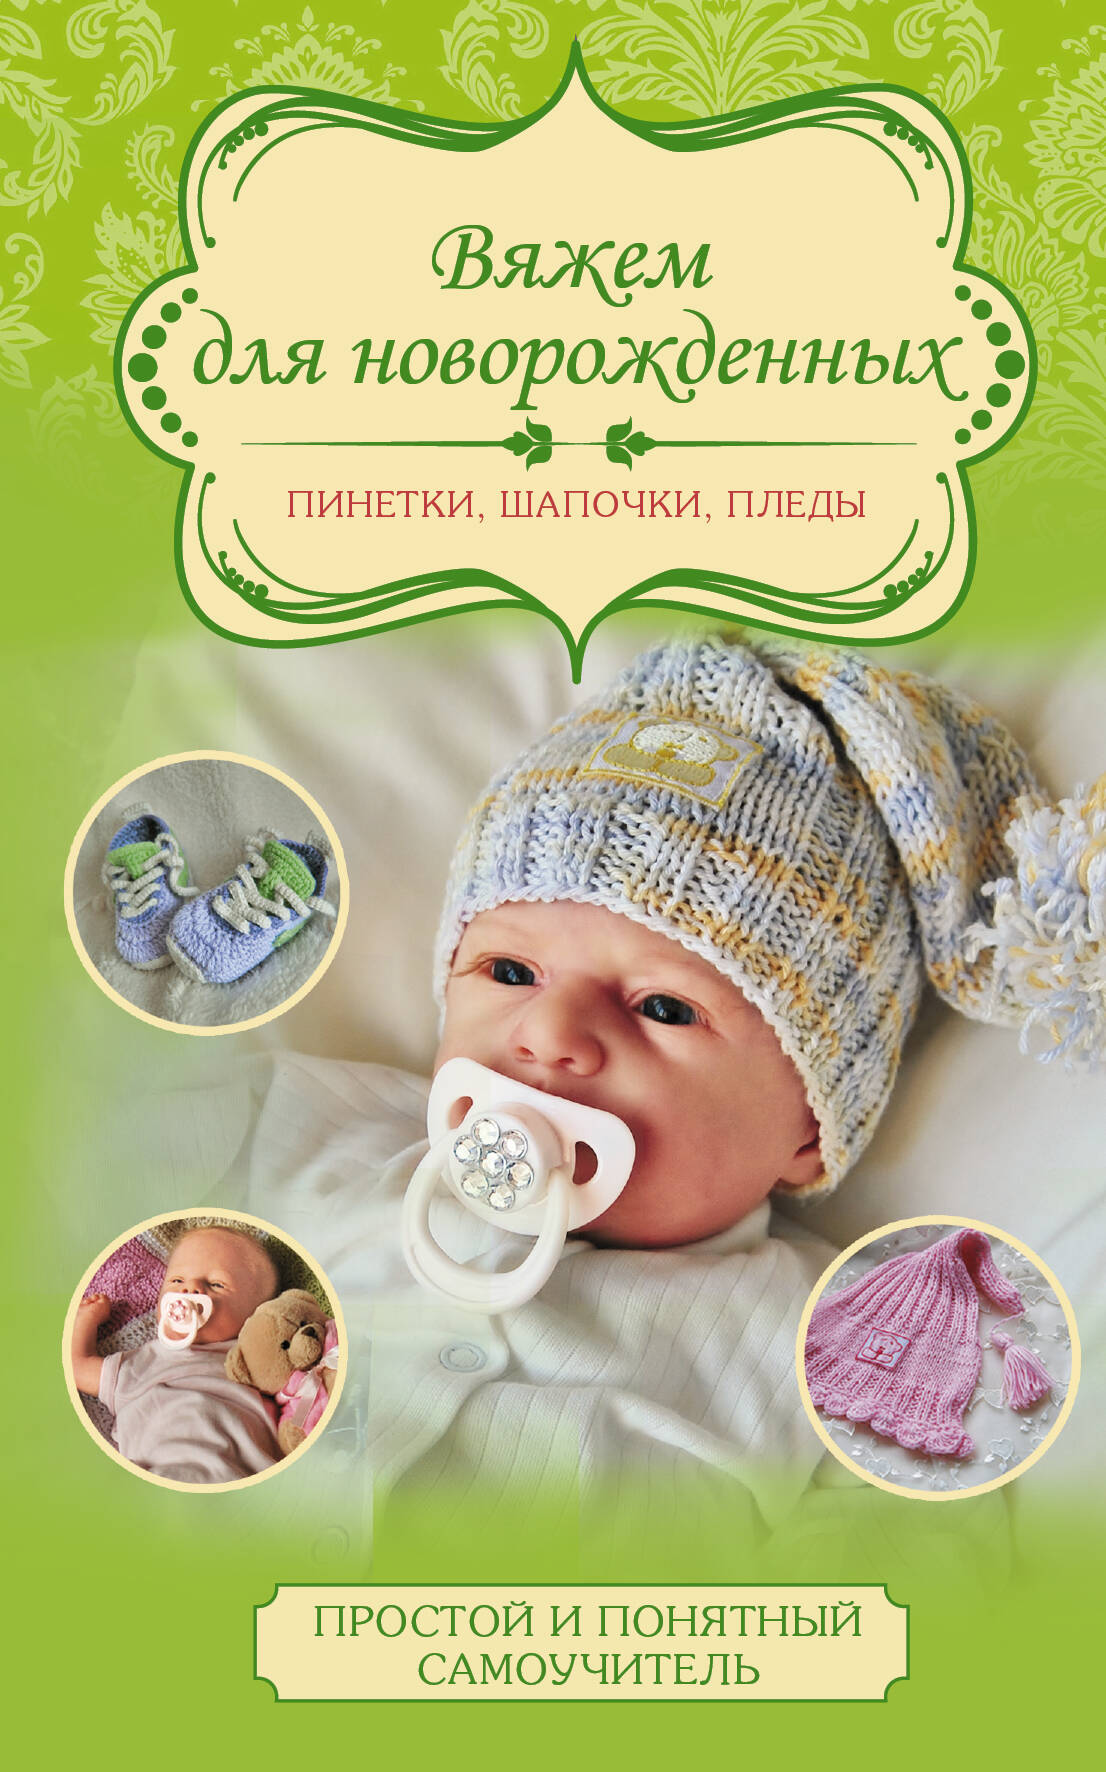 Демина Мария Александровна Вяжем для новорожденных: пинетки, шапочки, пледы - страница 0